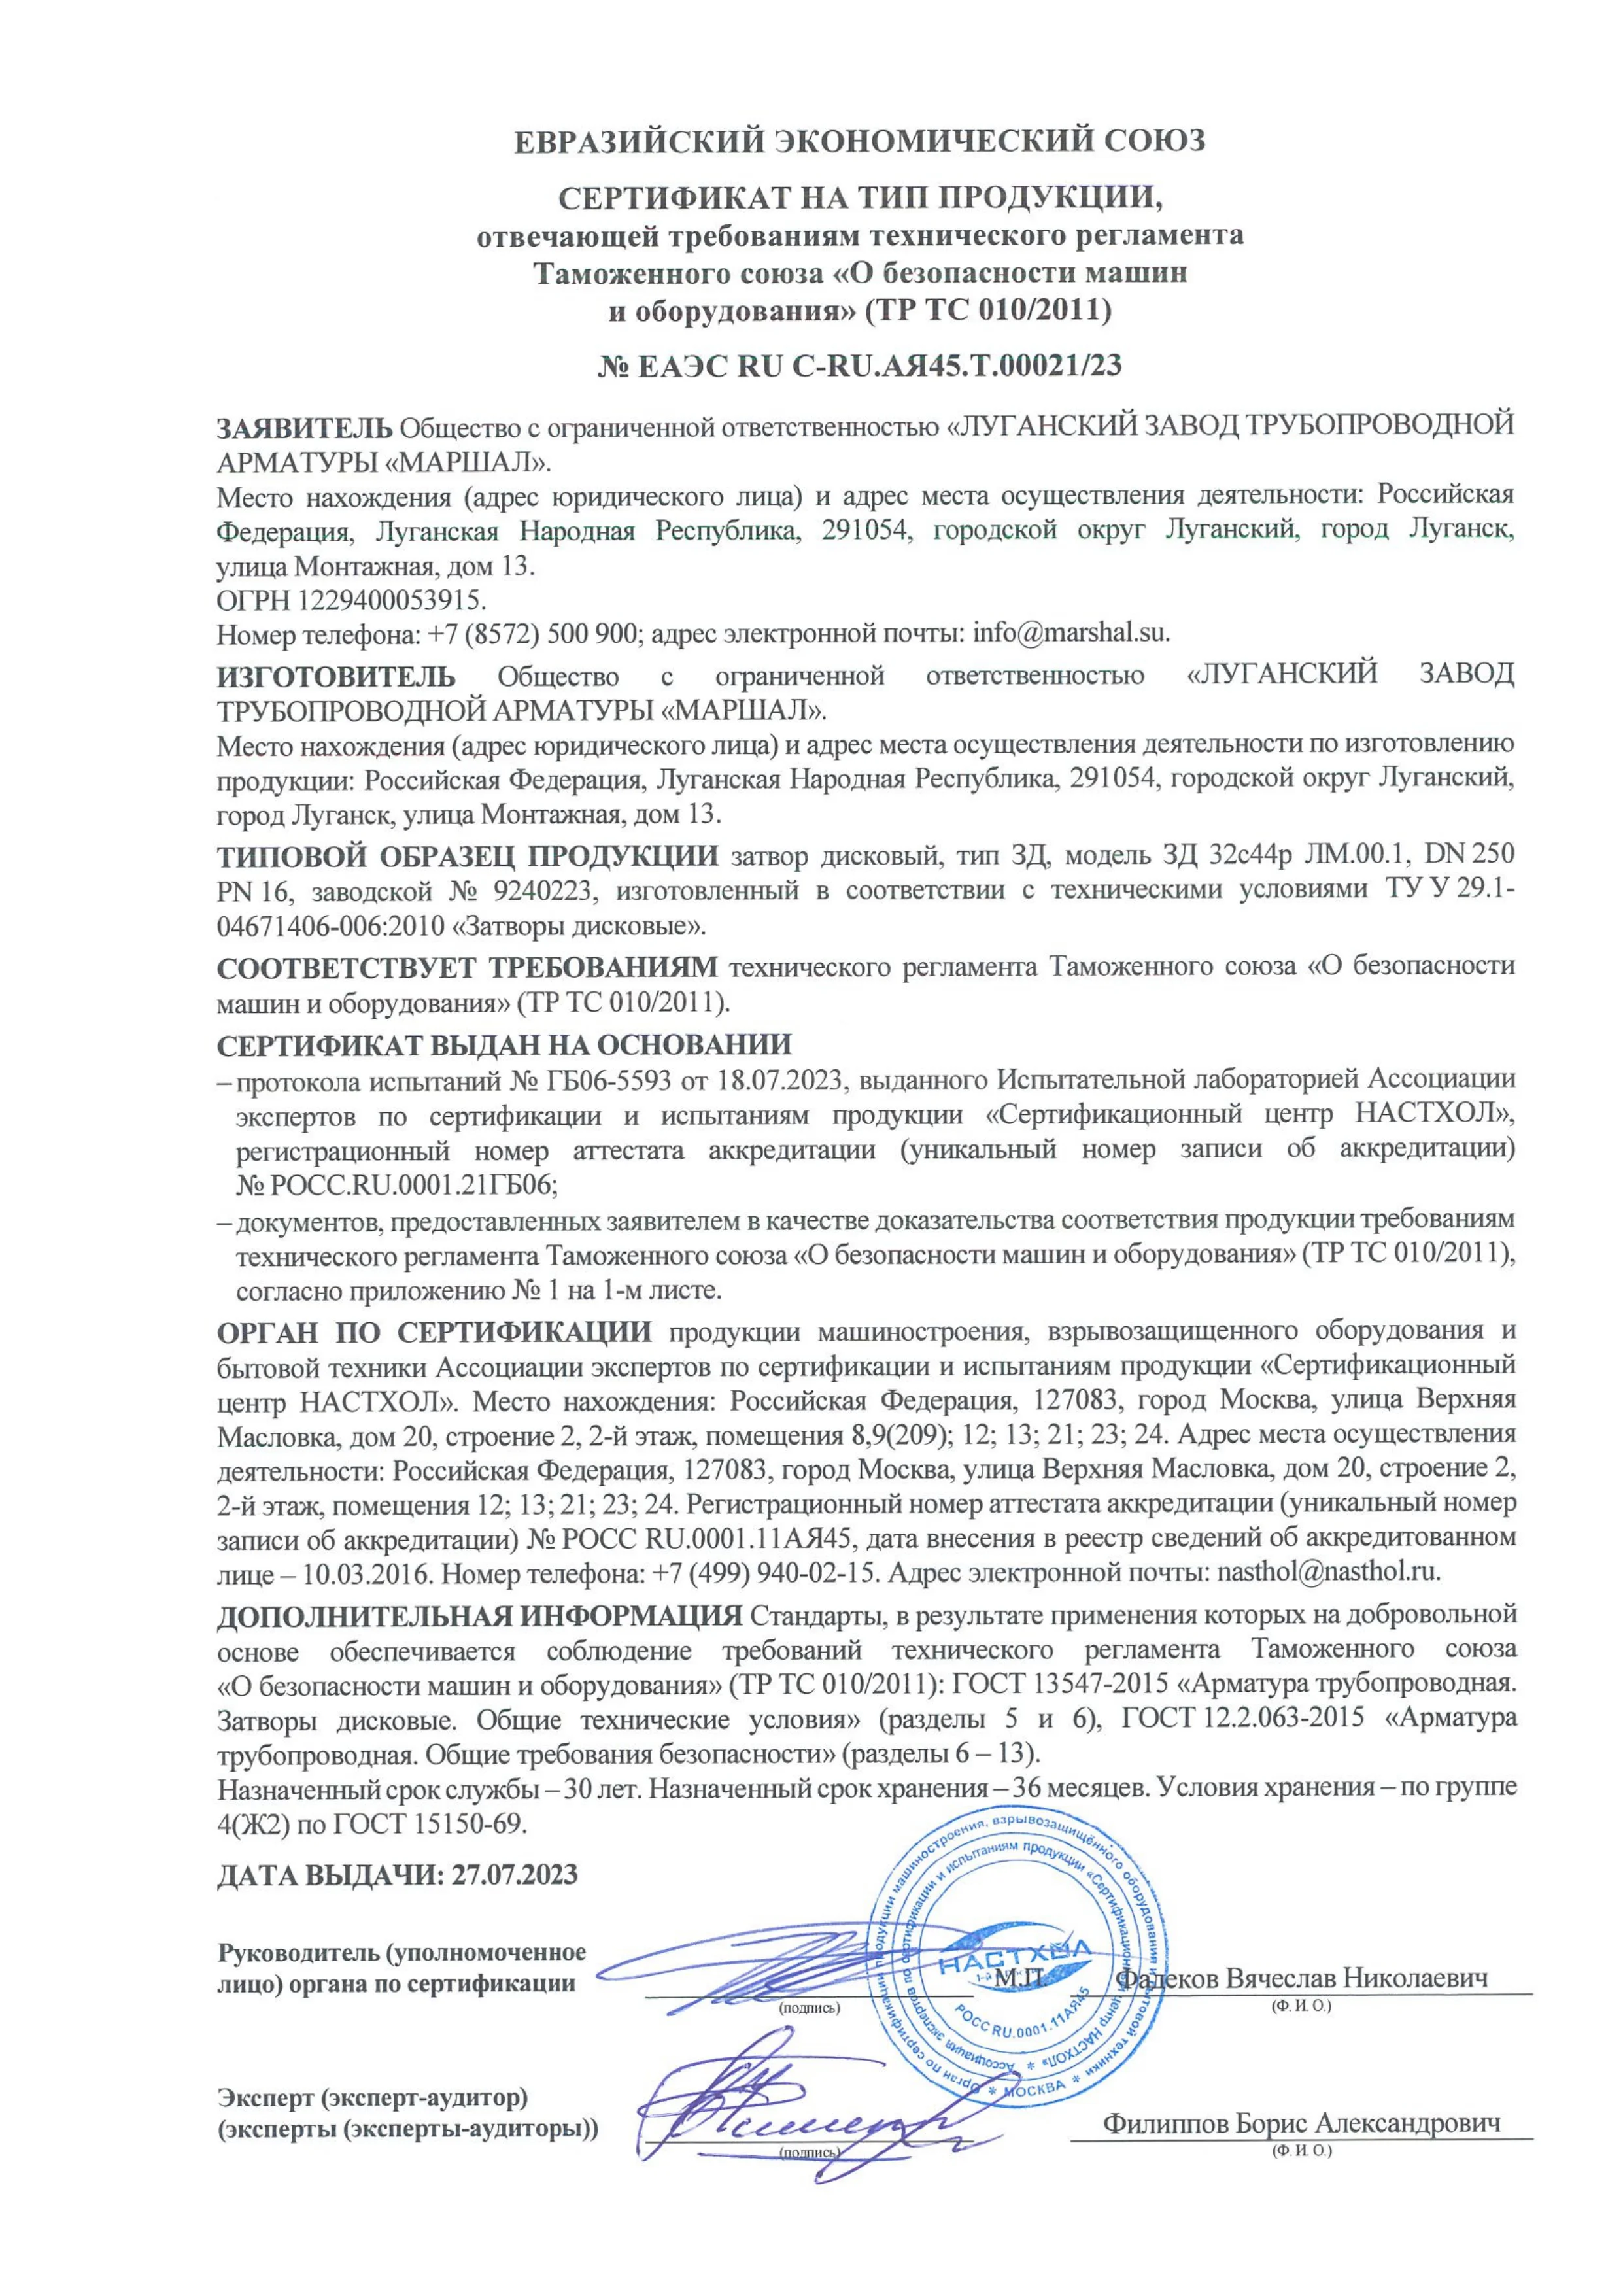 Сертификат соответствии  требованиям ТР ТС 010/2011 на затворы дисковые тип ЗД